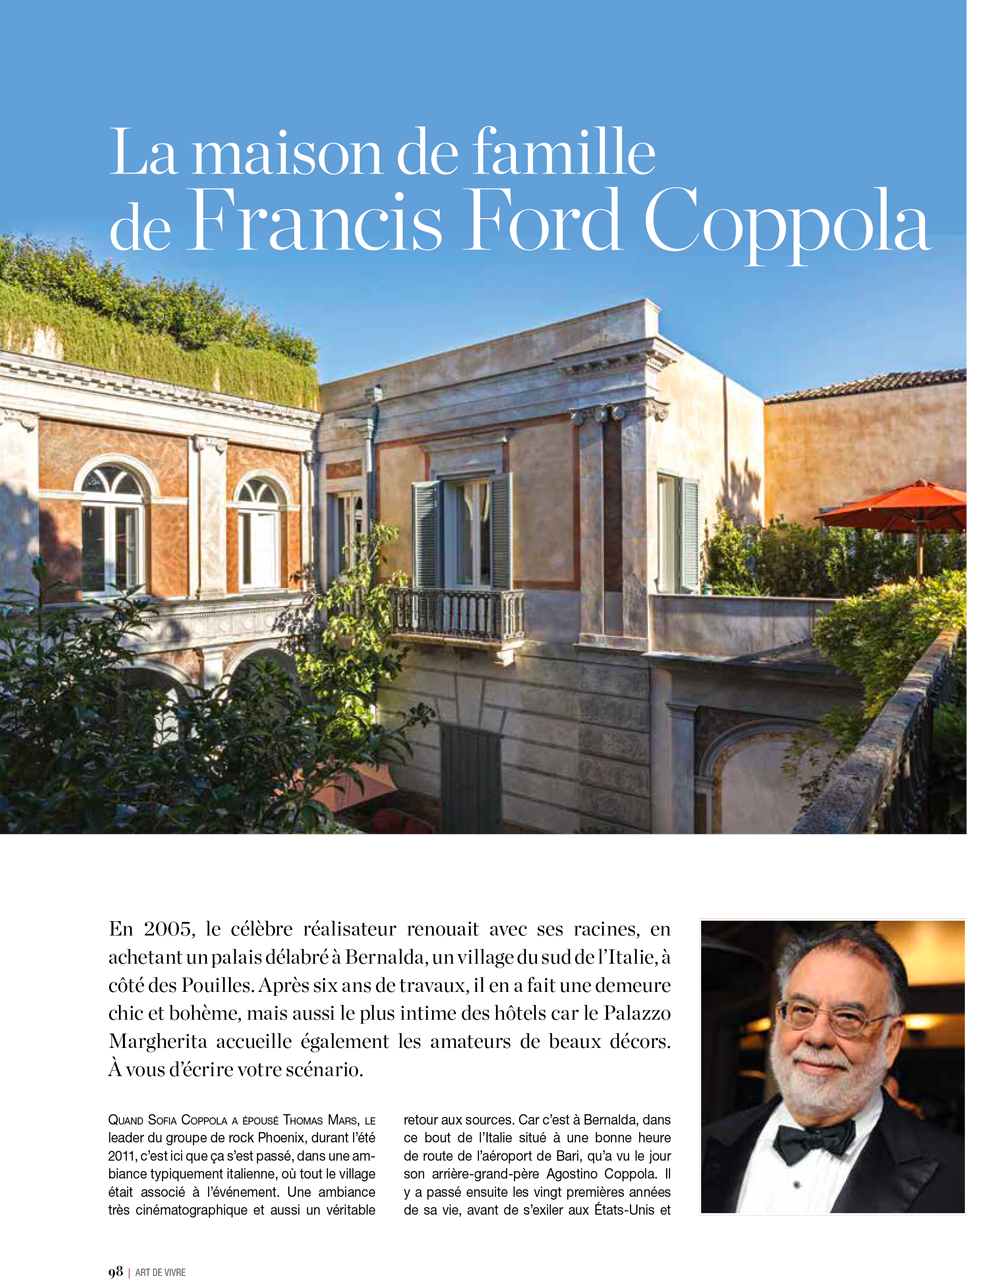 La maison de famille de Francis Ford Coppola